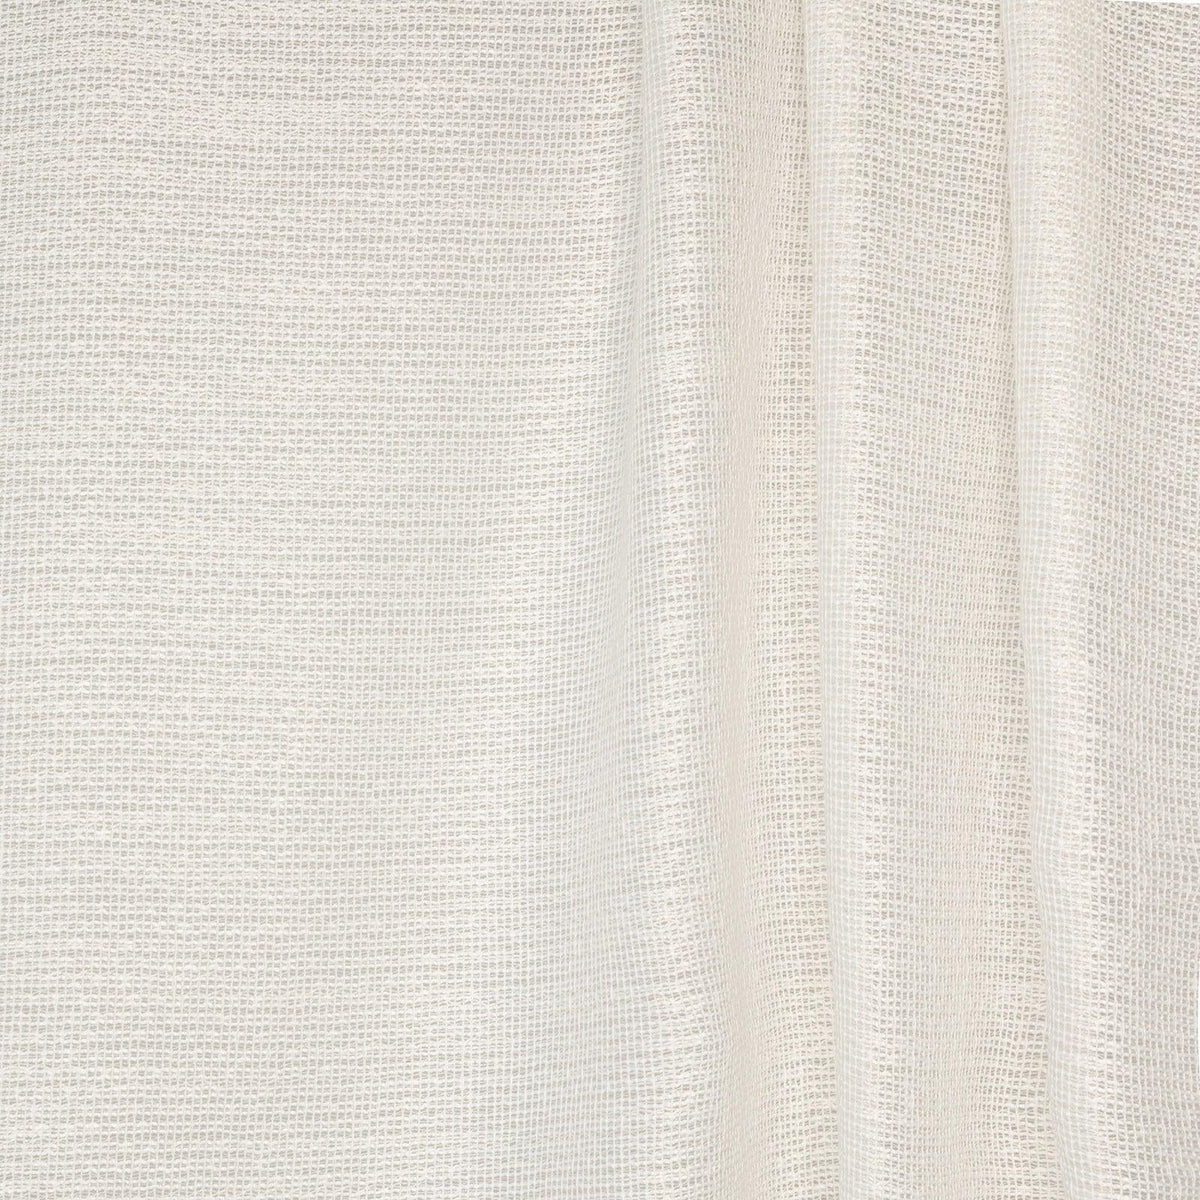 Zenzen-White - Atlanta Fabrics